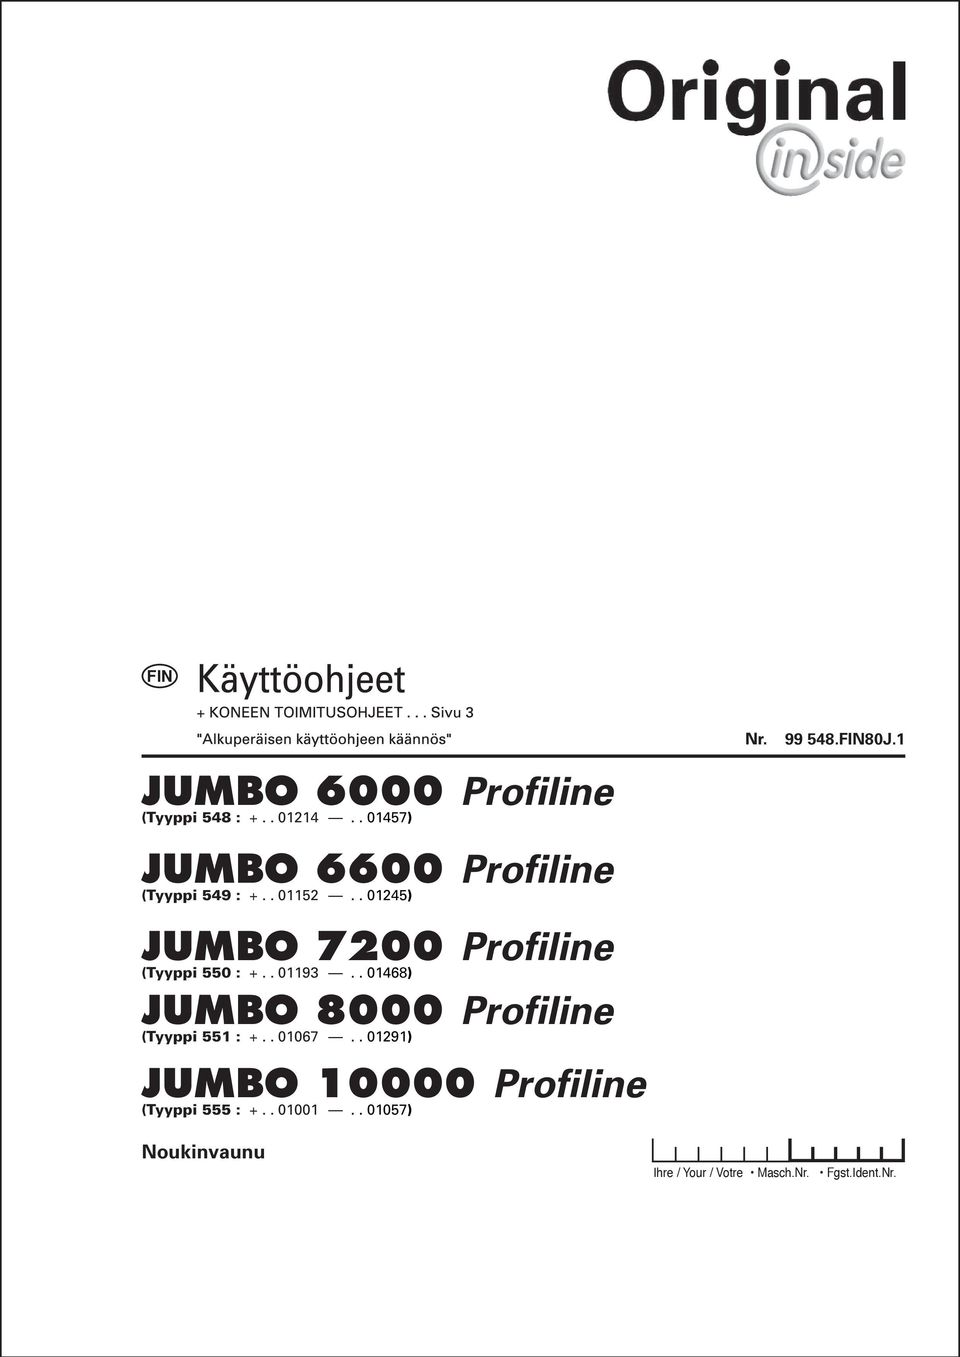 . 01245) JUMBO 7200 Profiline (Tyyppi 550 : +.. 01193.